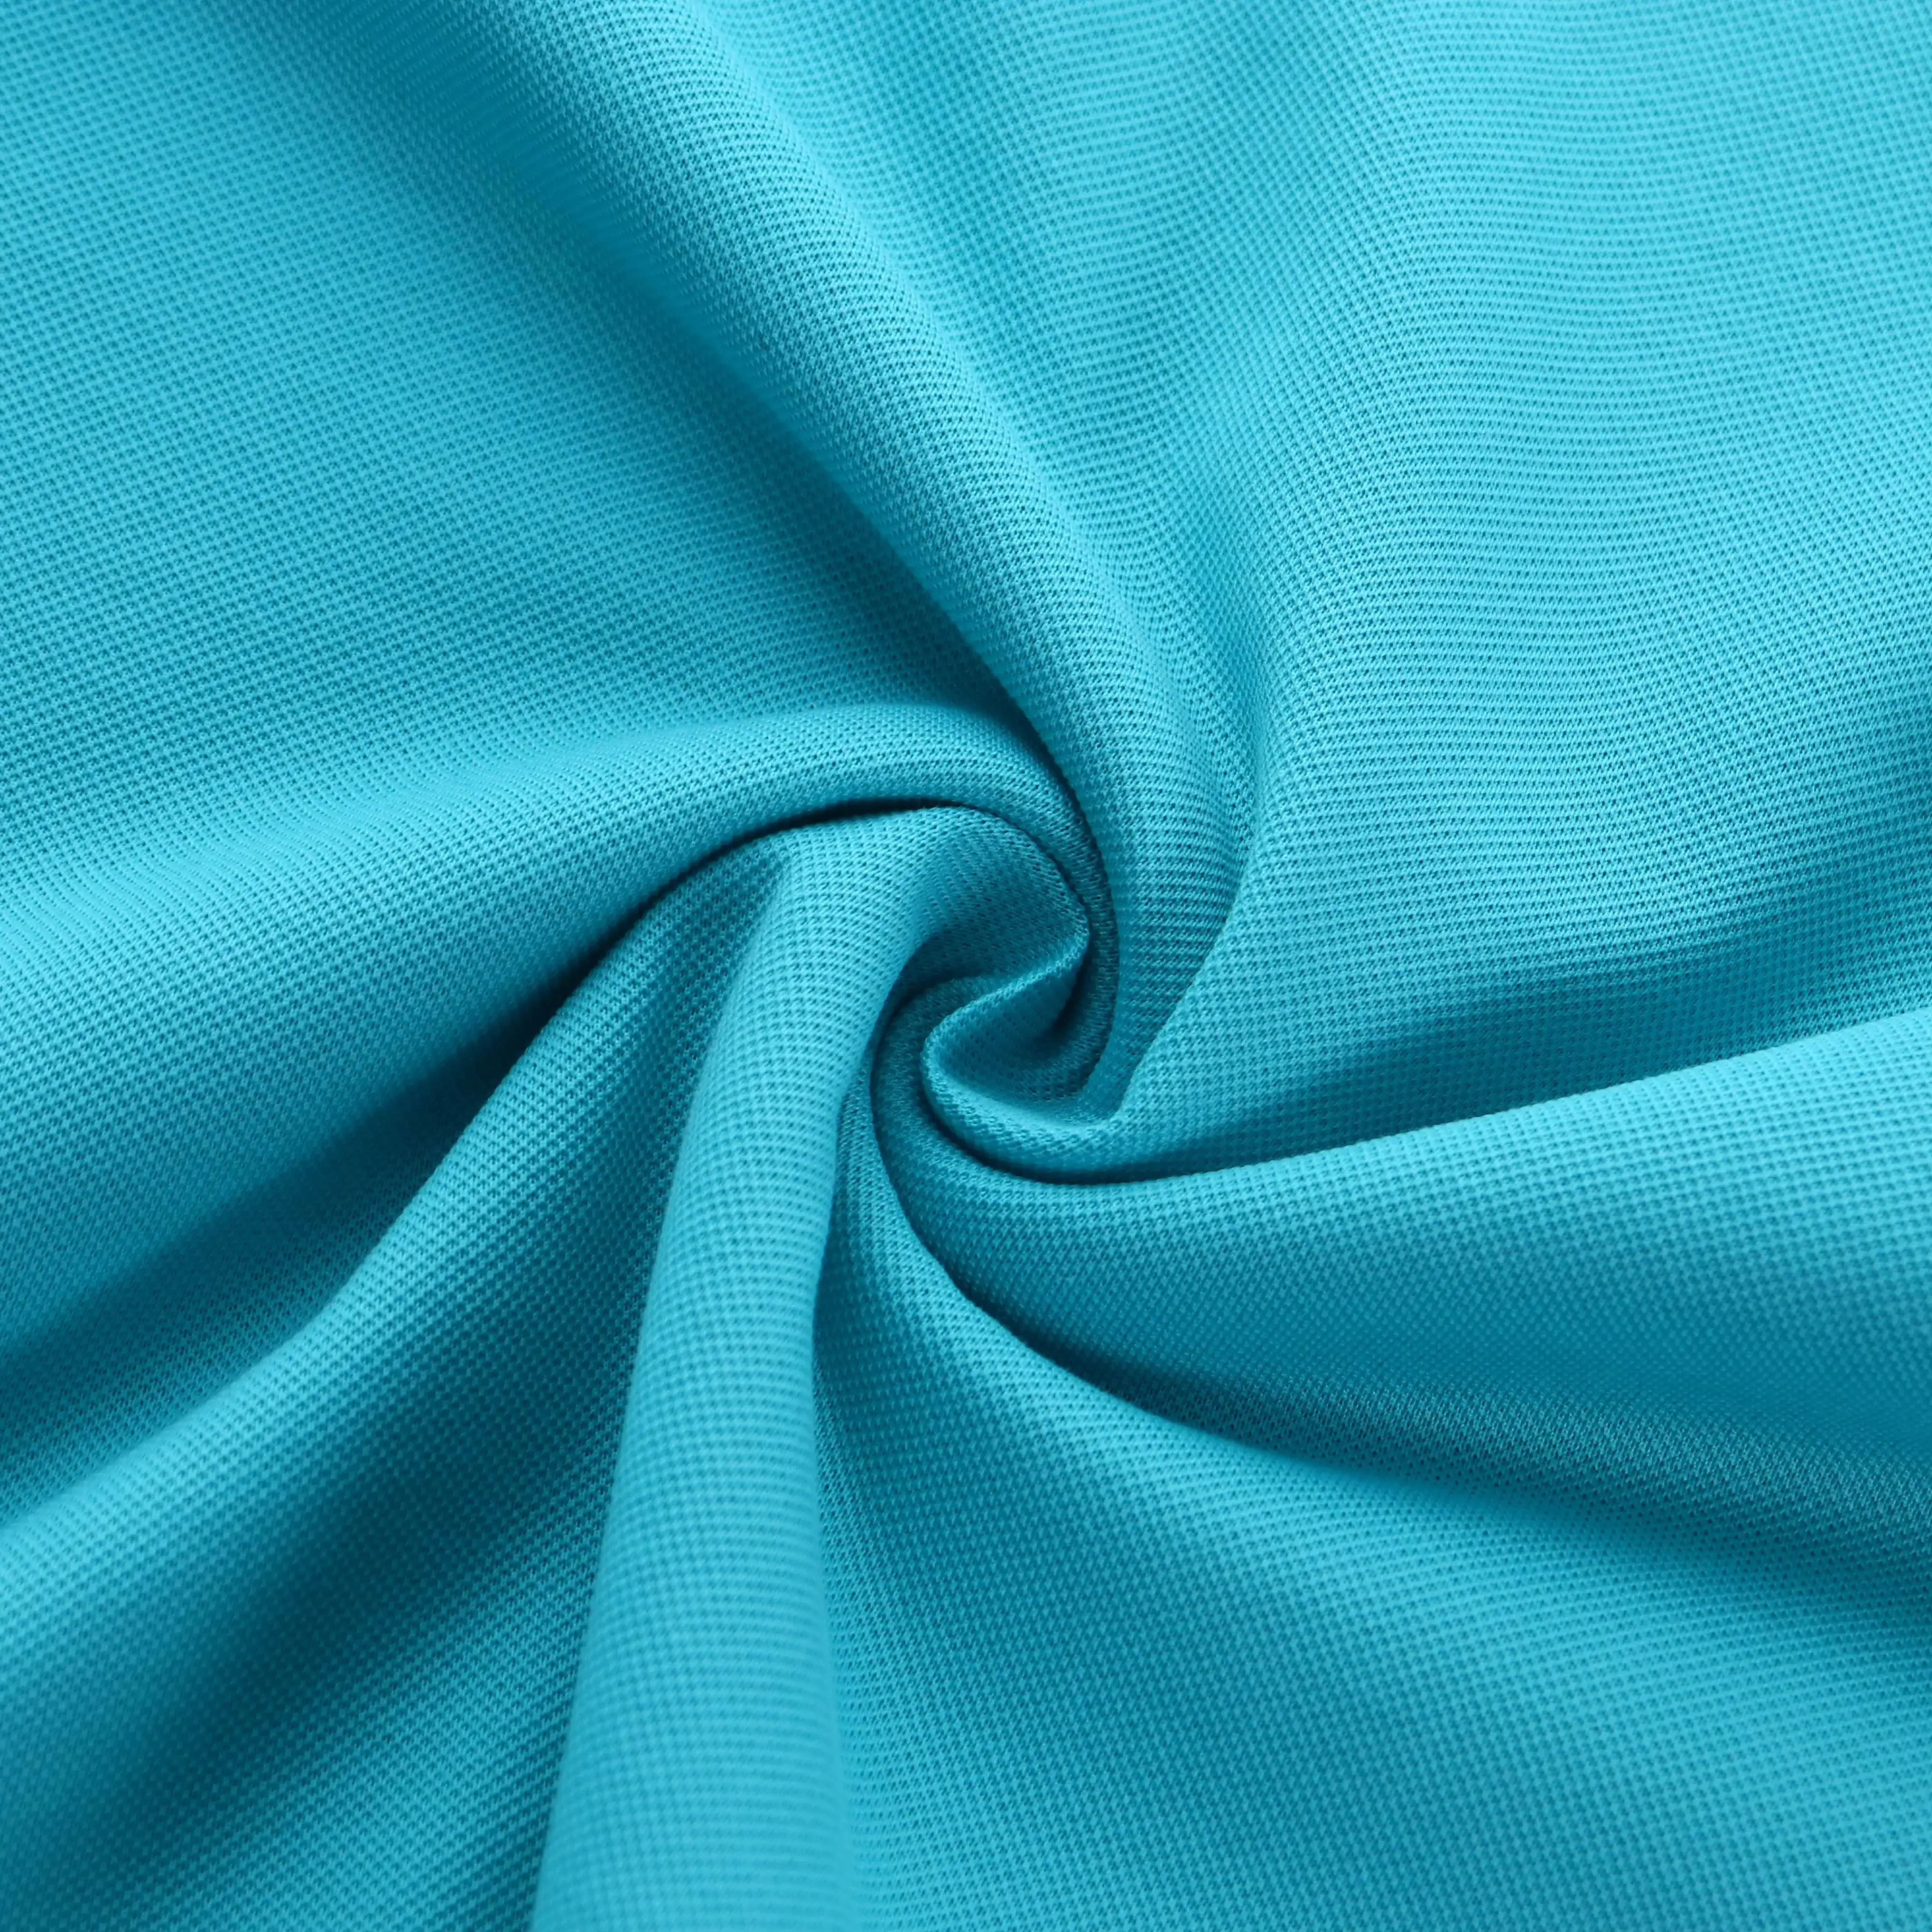 205gsm 40S/2 35% pima Высококачественная расчесанная хлопковая мерсеризованная ткань Pique трикотажная 100% хлопковая рубашка-поло